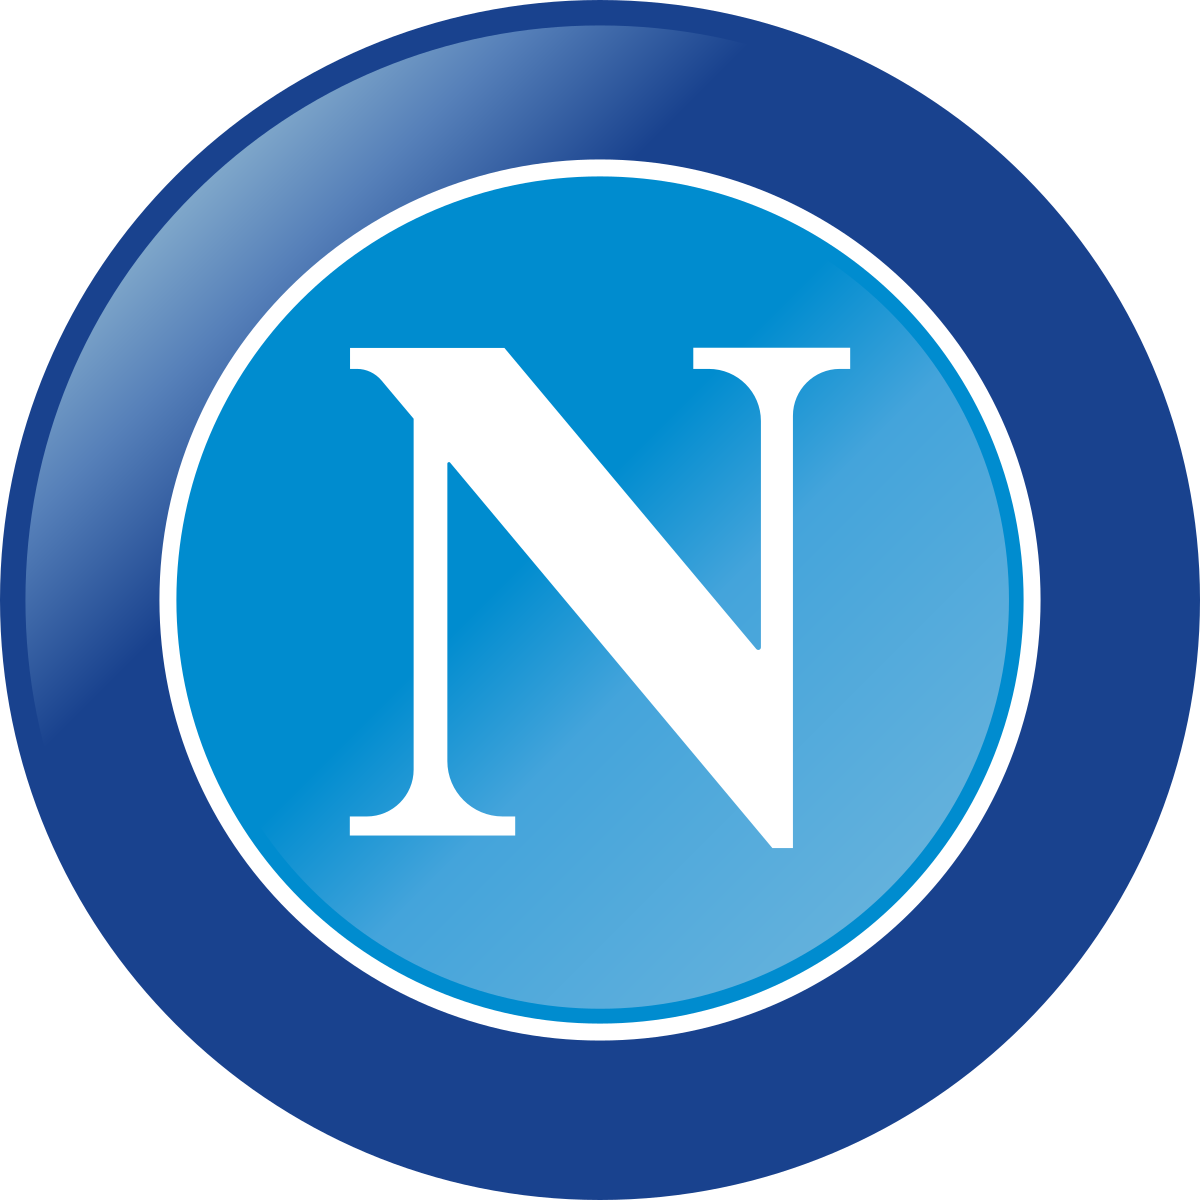 Società Sportiva Calcio Napoli - Wikipedia